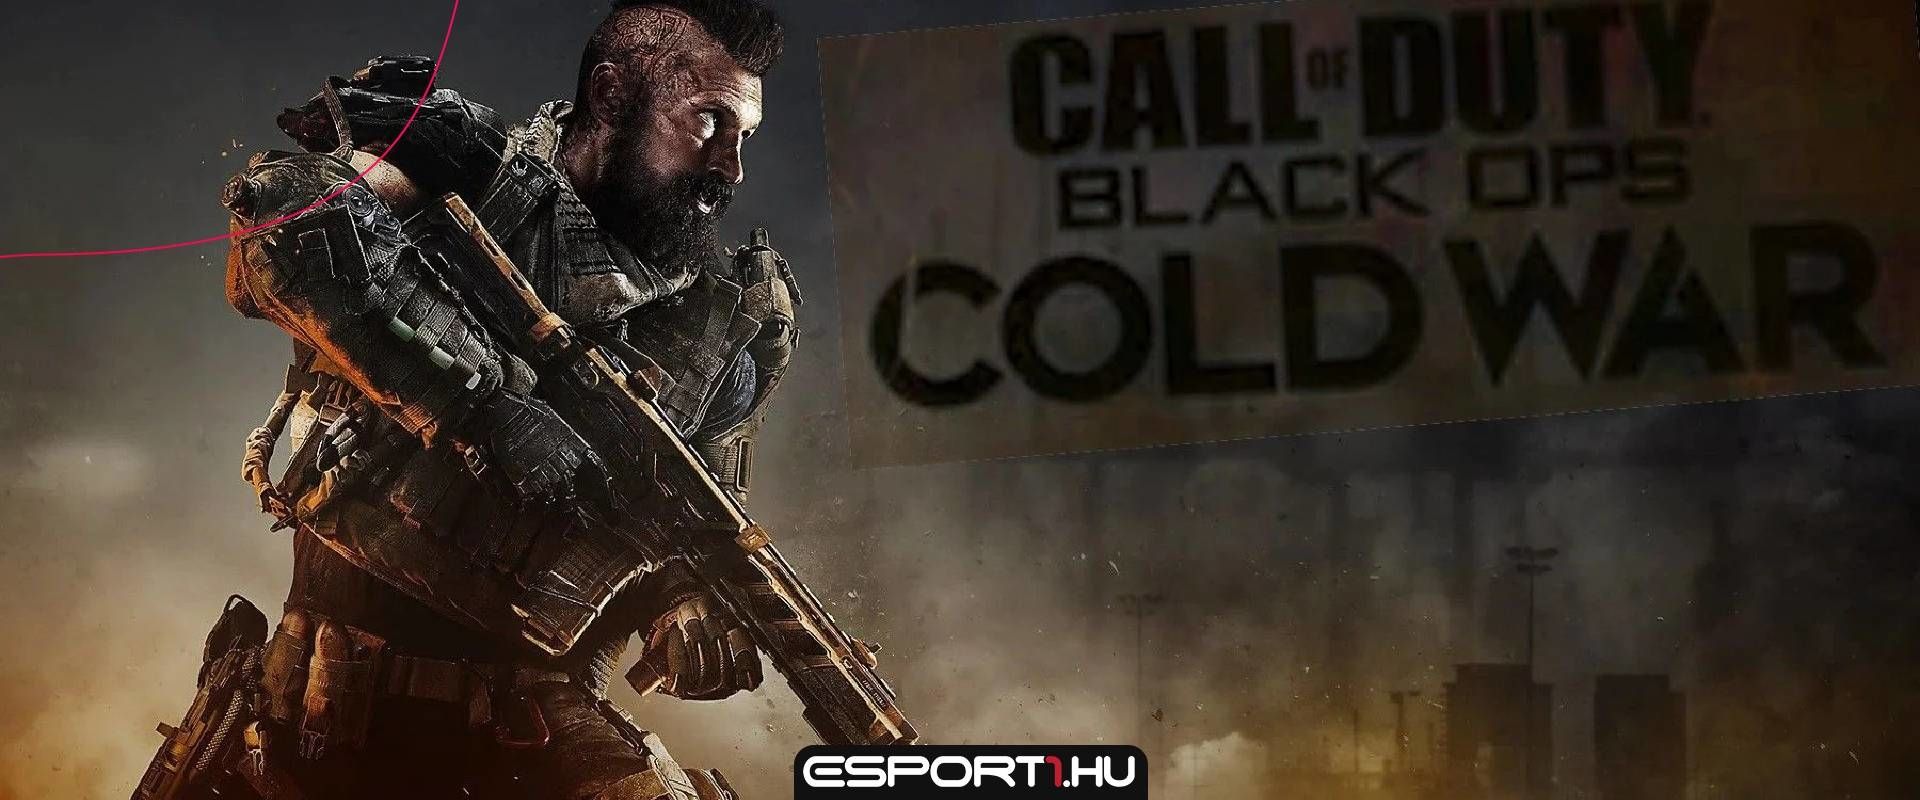 Már a megjelenés első napján rekordot döntött a Call of Duty: Black Ops Cold War